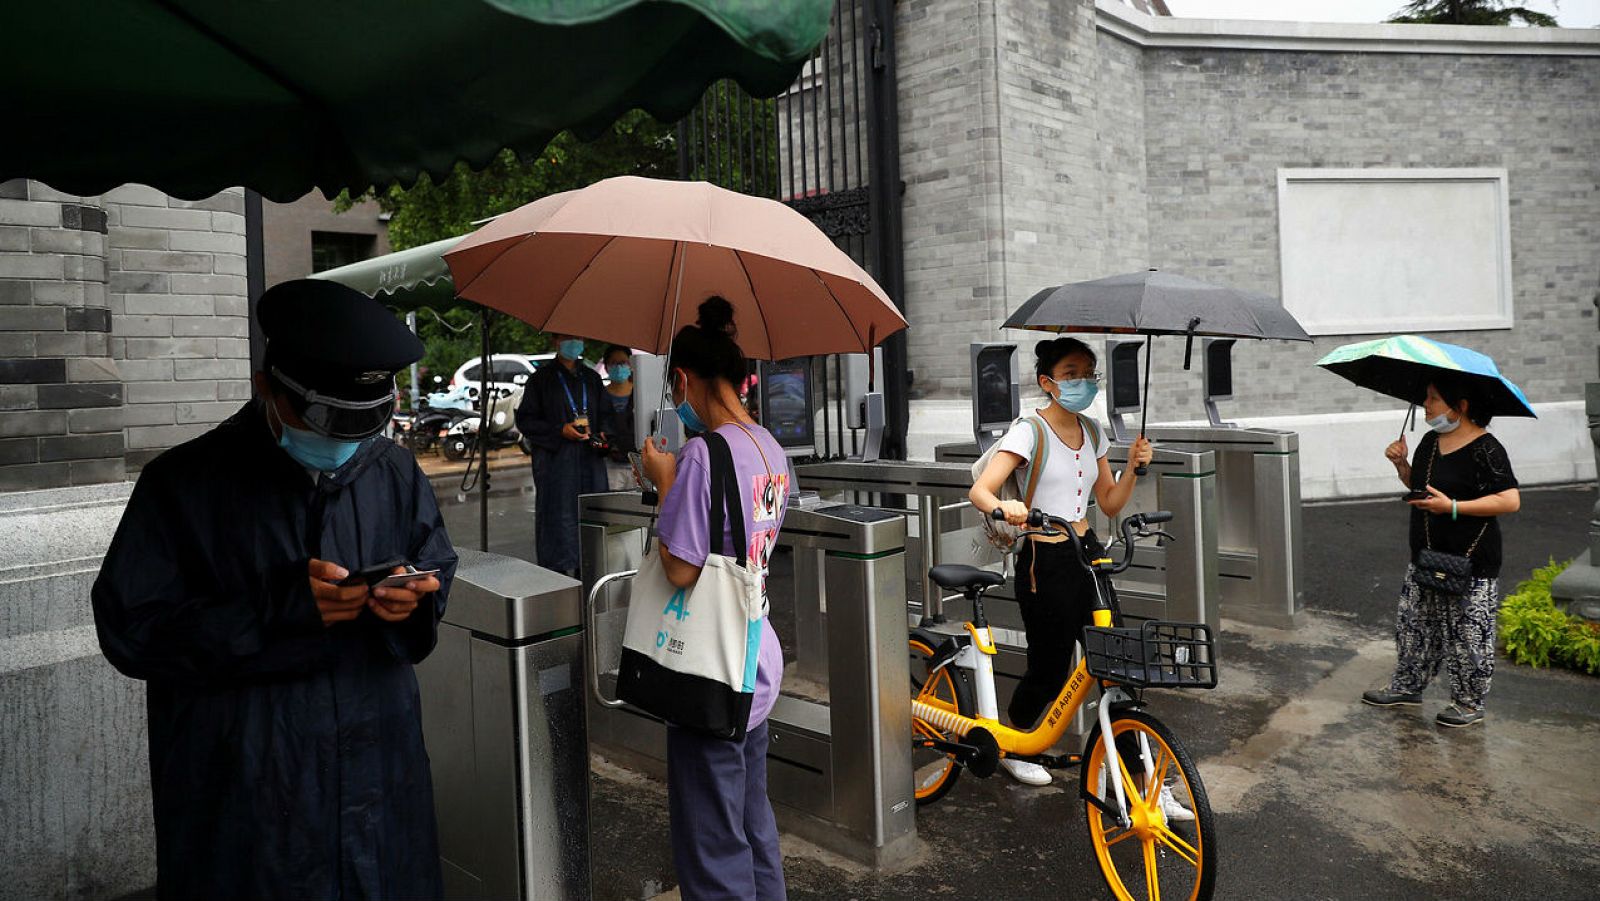 Estudiantes pasan por puertas de reconocimiento facial controladas por cámaras para ingresar a la Universidad de Pekín en Beijing, China.